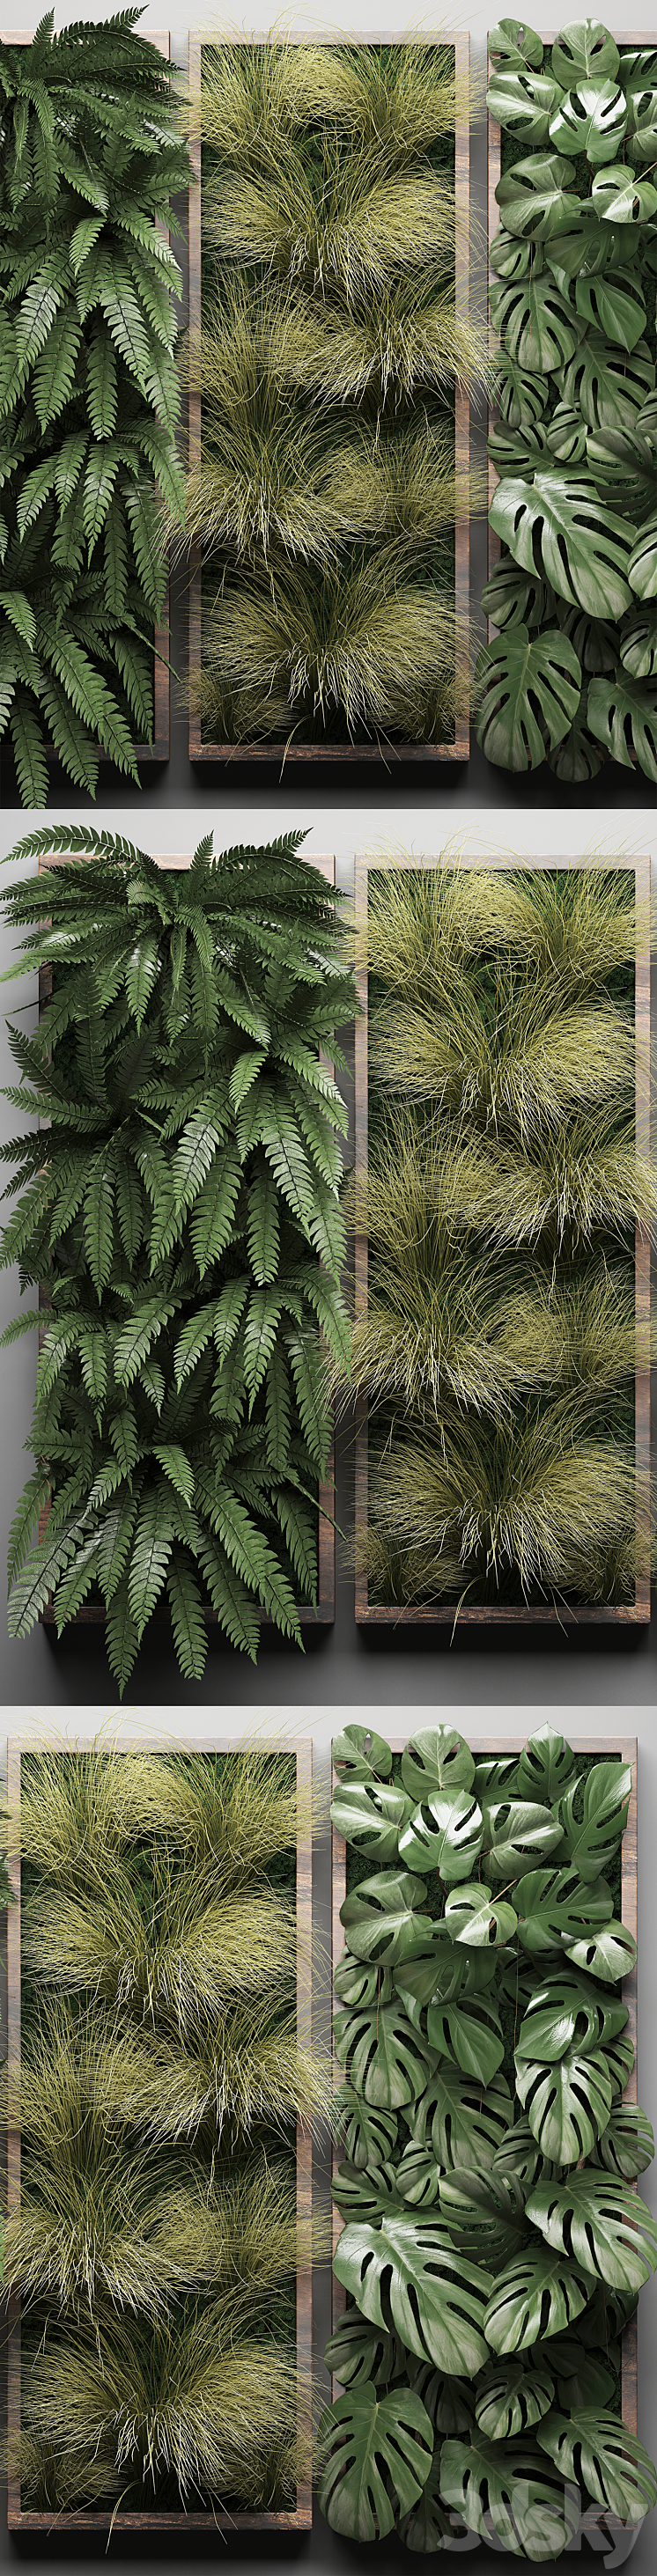 Vertical garden 29. Phytowall picture grass fern monstera wall decor phytomodule vertical garden 3DS Max - thumbnail 2